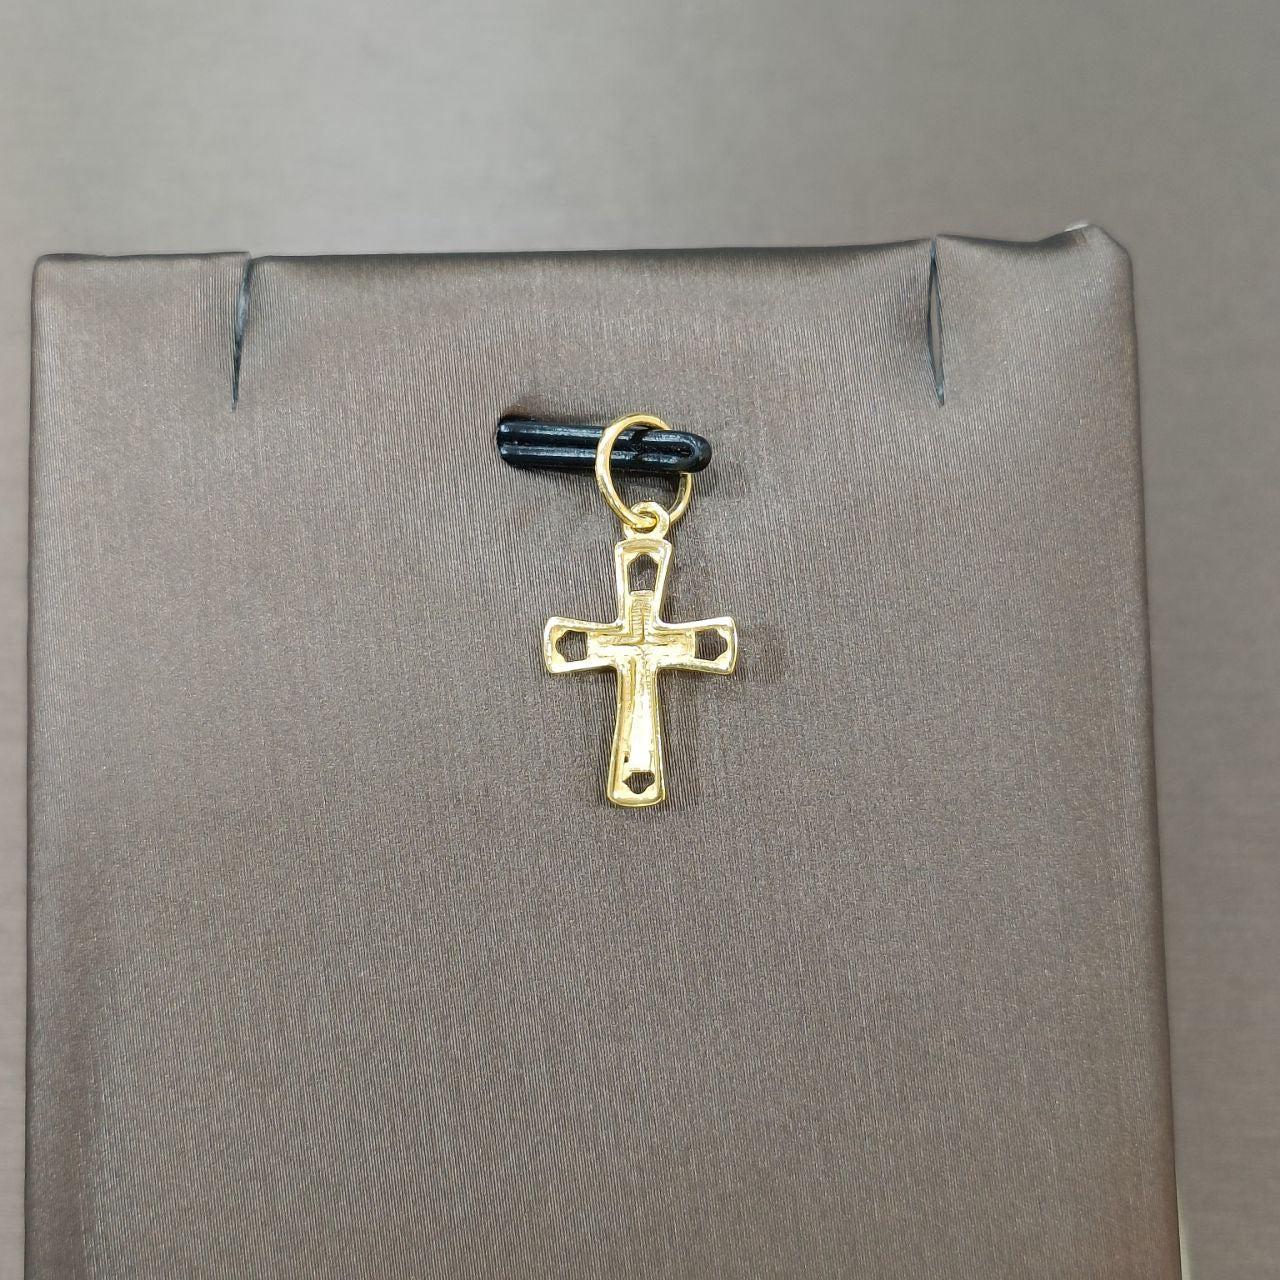 22k / 916 Gold Cross Pendant-Charms & Pendants-Best Gold Shop